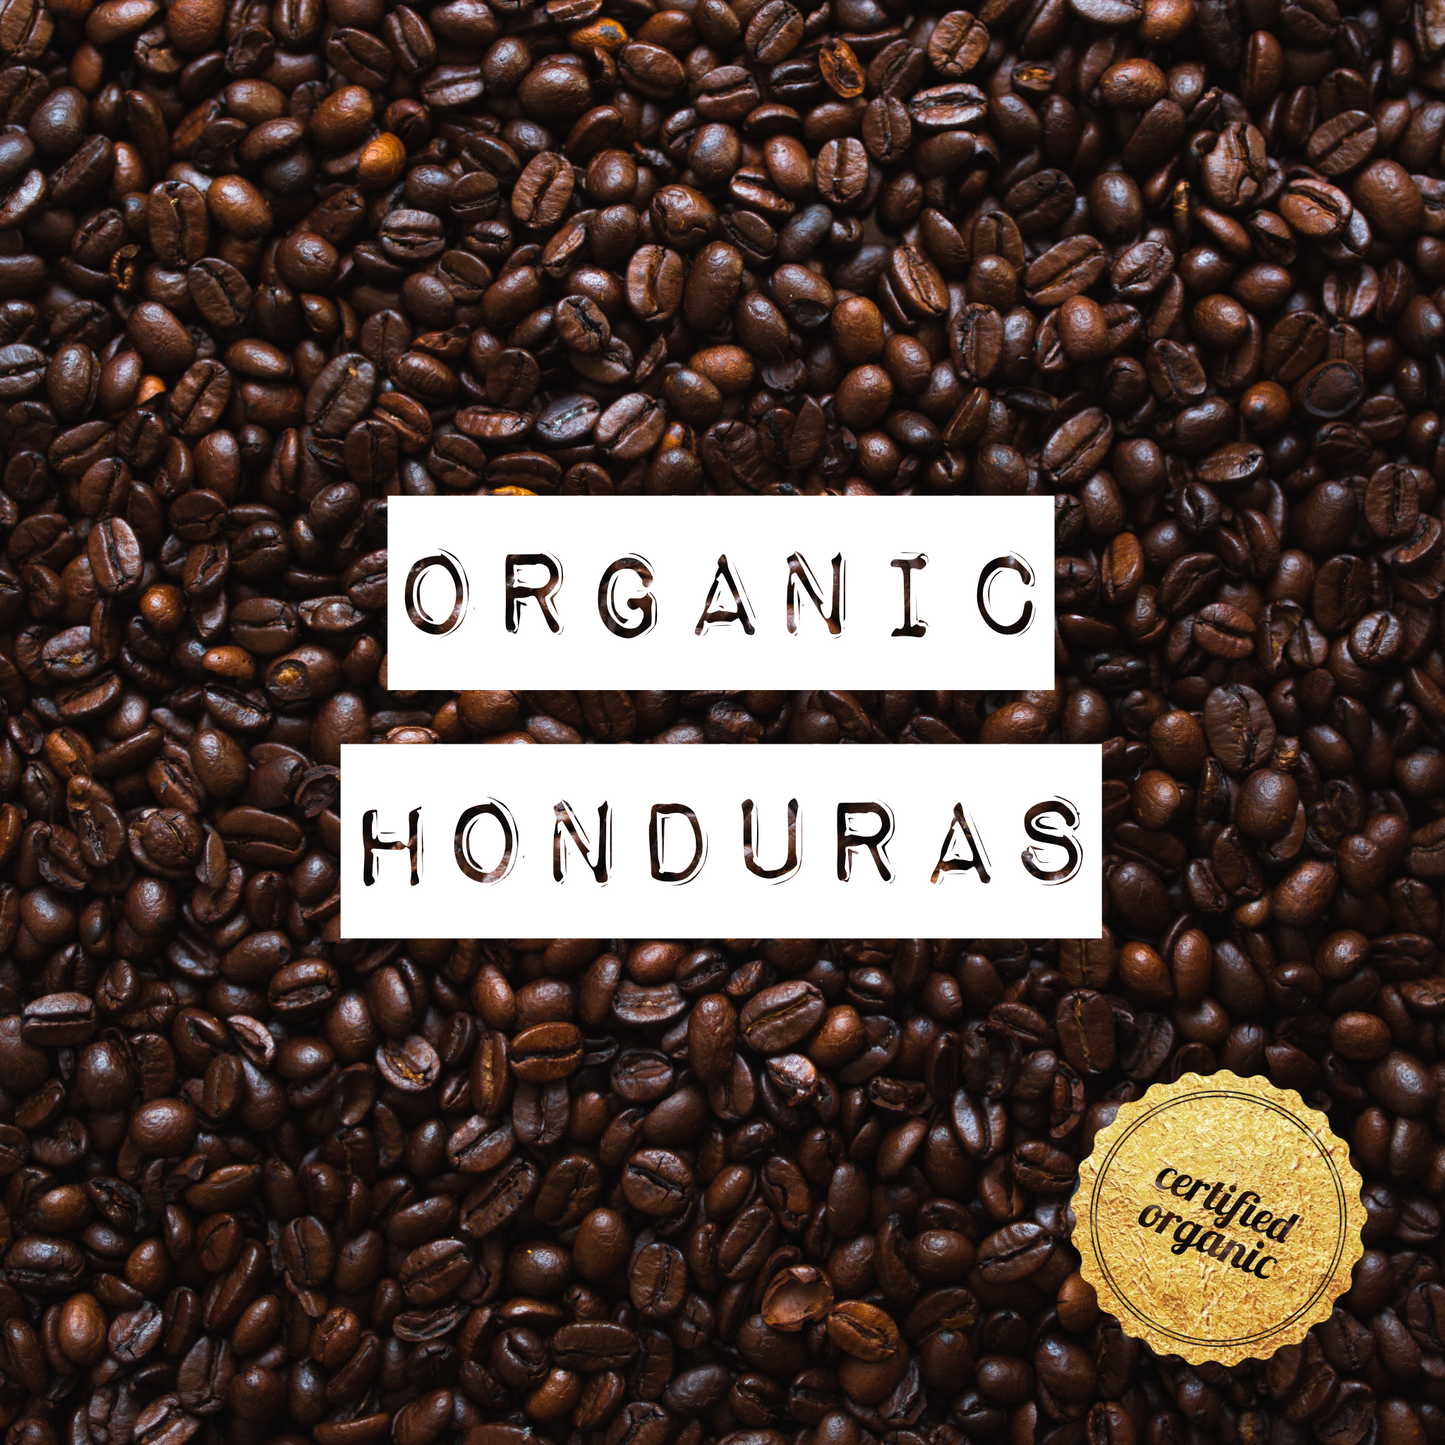 Organic Honduras